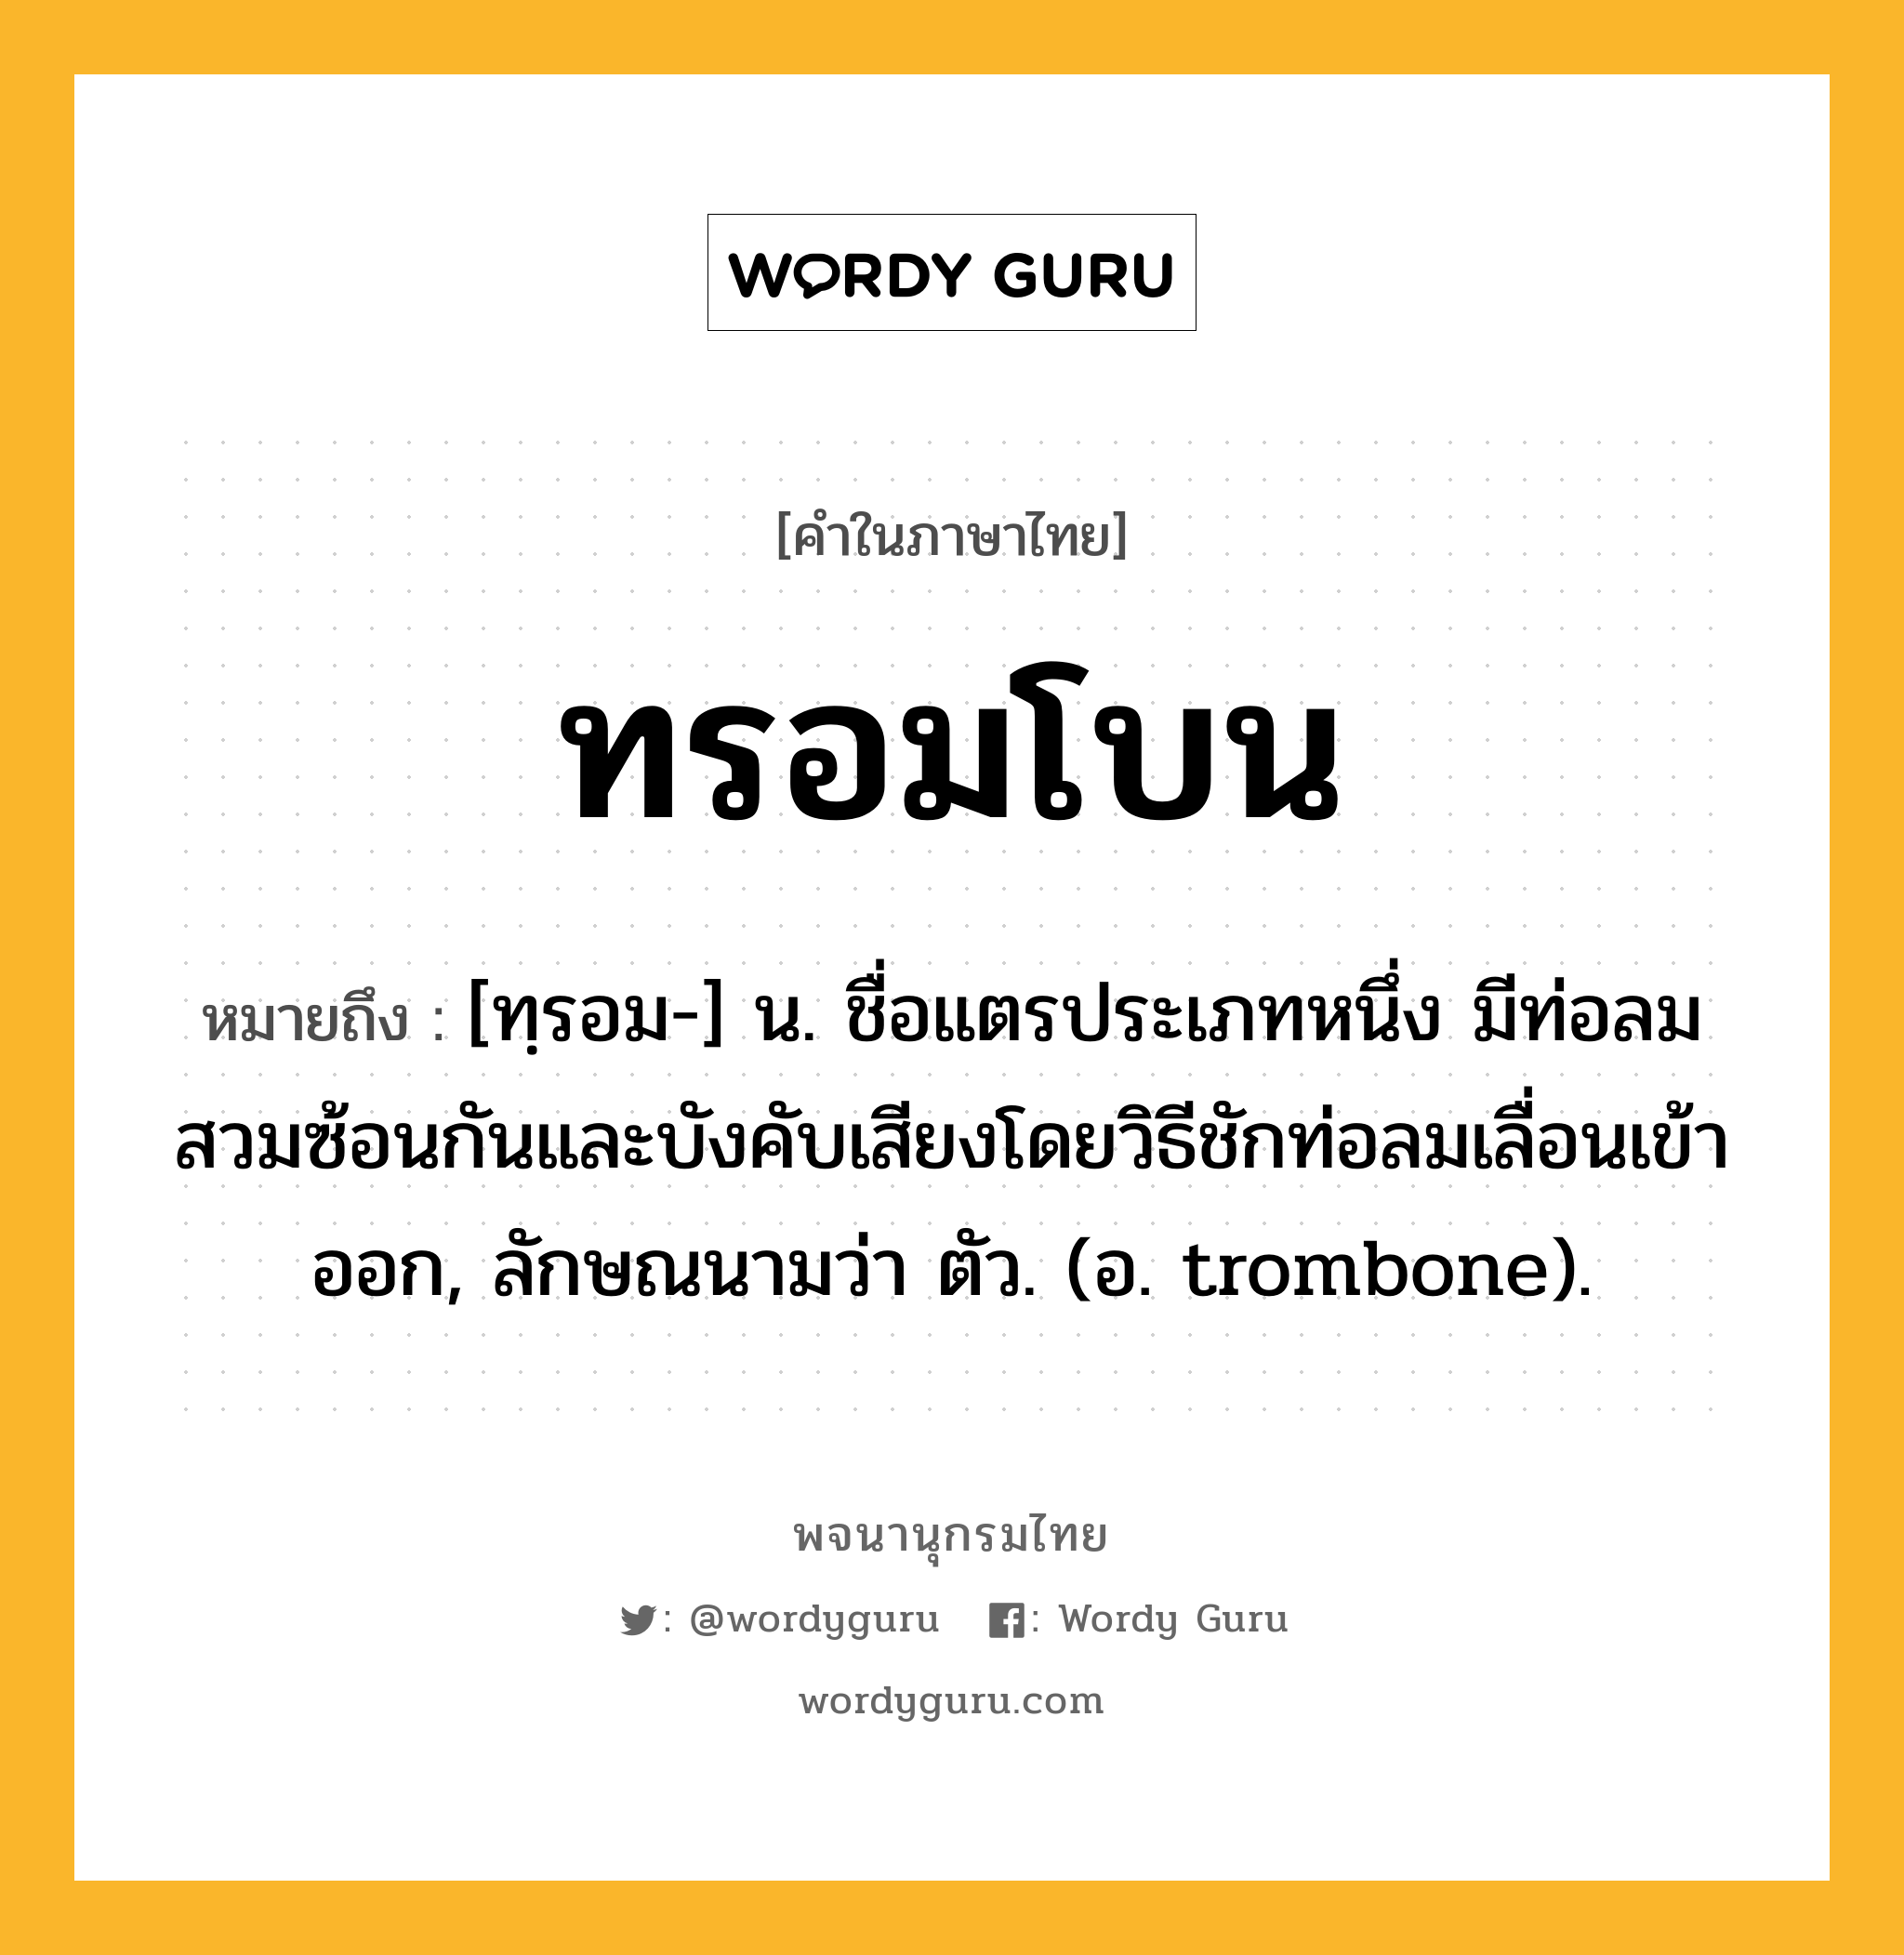 ทรอมโบน ความหมาย หมายถึงอะไร?, คำในภาษาไทย ทรอมโบน หมายถึง [ทฺรอม-] น. ชื่อแตรประเภทหนึ่ง มีท่อลมสวมซ้อนกันและบังคับเสียงโดยวิธีชักท่อลมเลื่อนเข้าออก, ลักษณนามว่า ตัว. (อ. trombone).